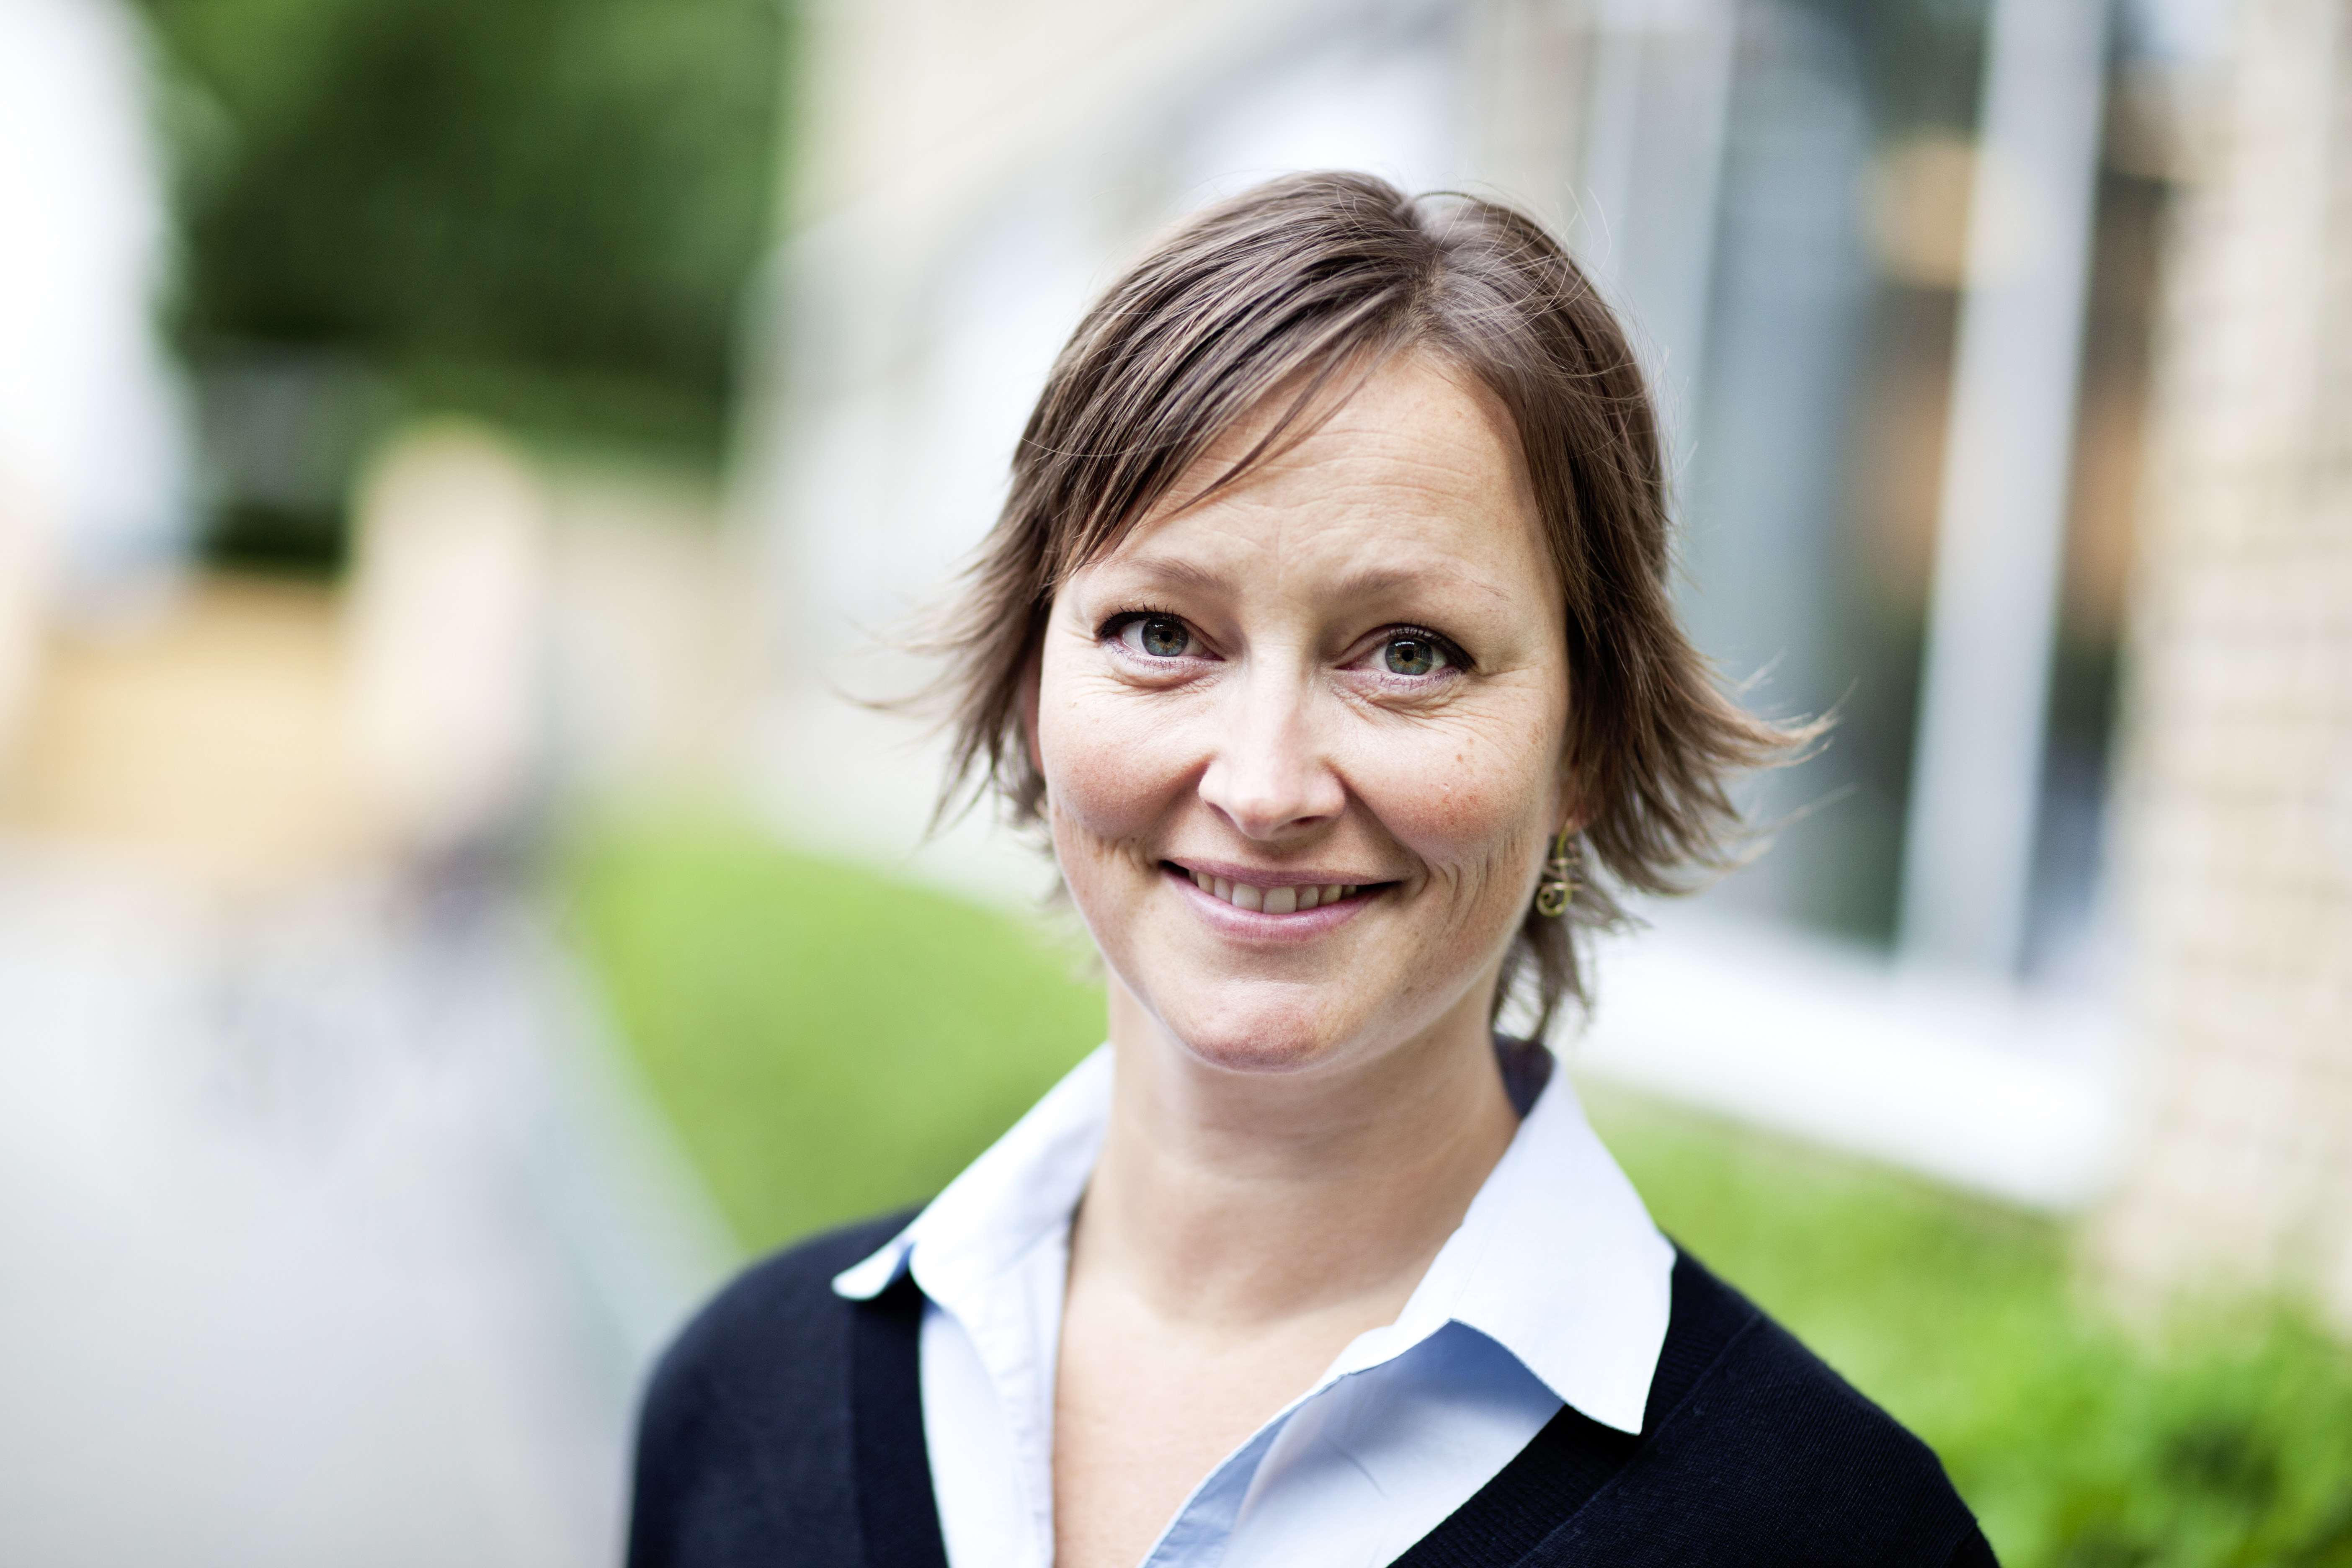 Rikke Louise Meyer fra iNano er en af de kvindelige forskere fra Aarhus Universitet, der tidligere har modtaget For Women in Science-legatet. Foto: Jesper Rais/AU Kommunikation